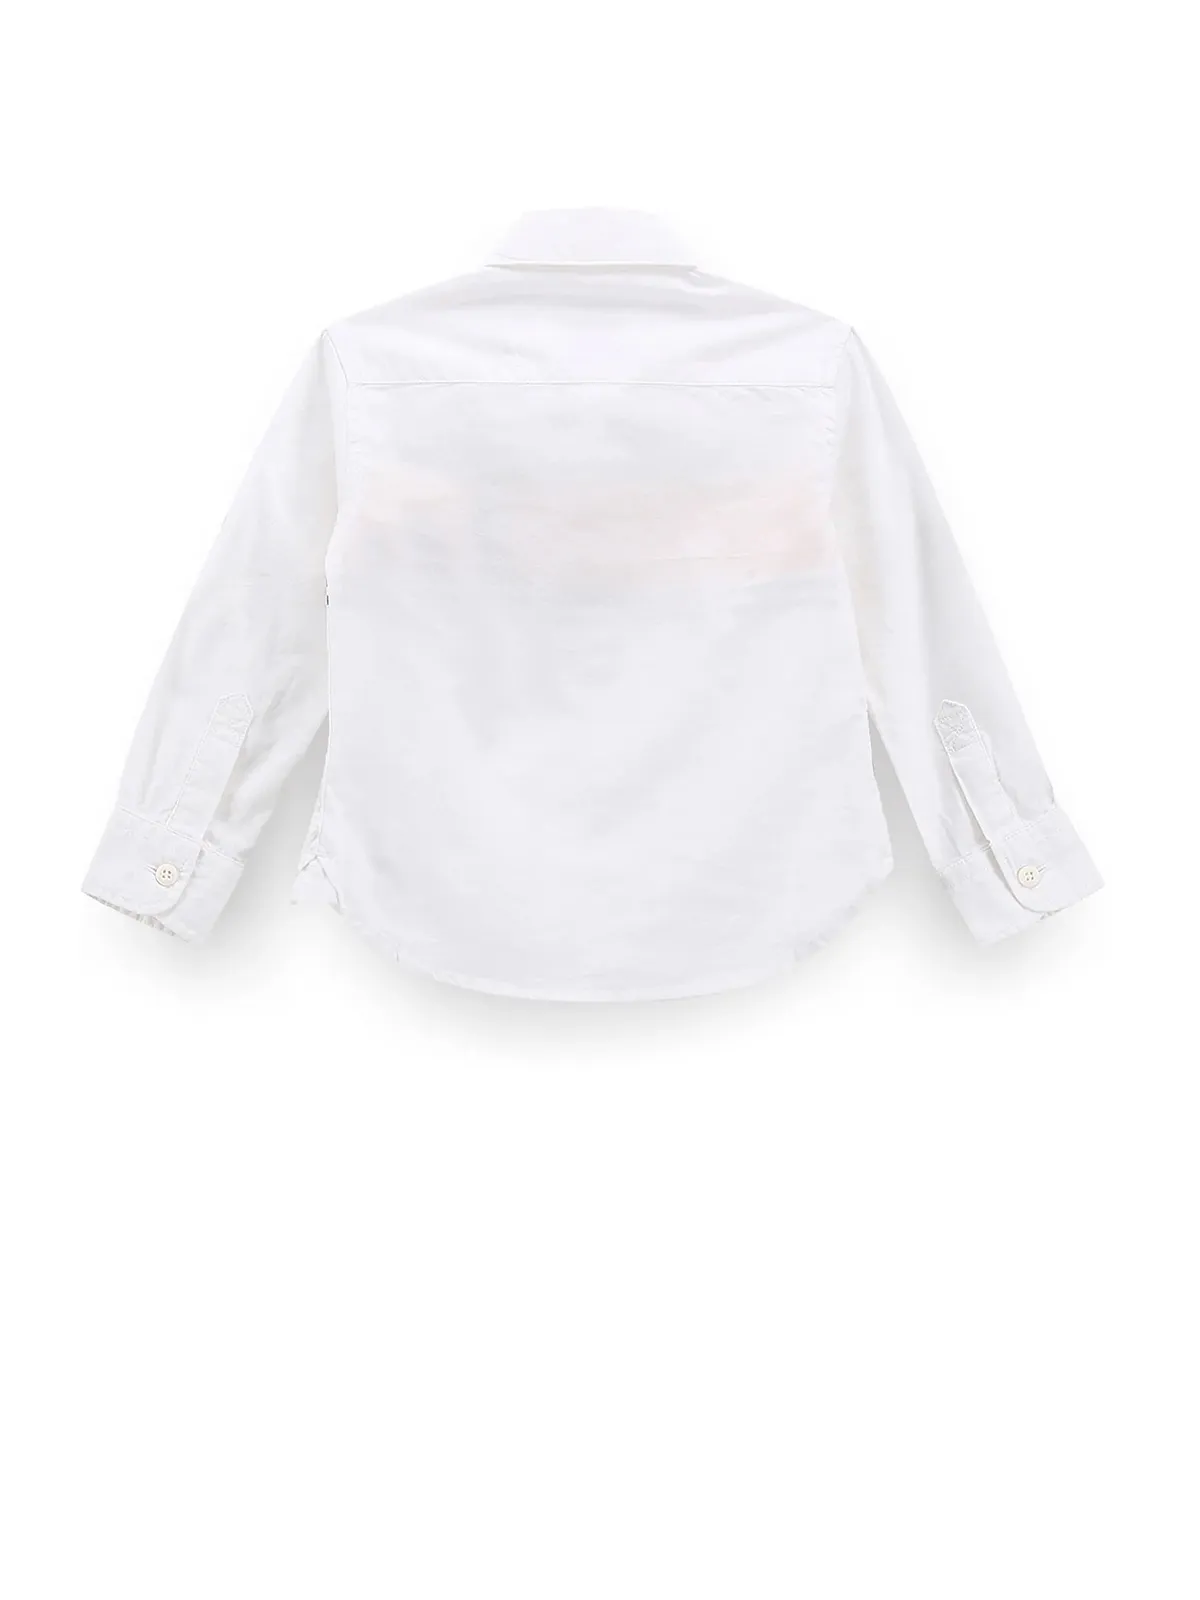 U S POLO ASSN white stripe cotton shirt